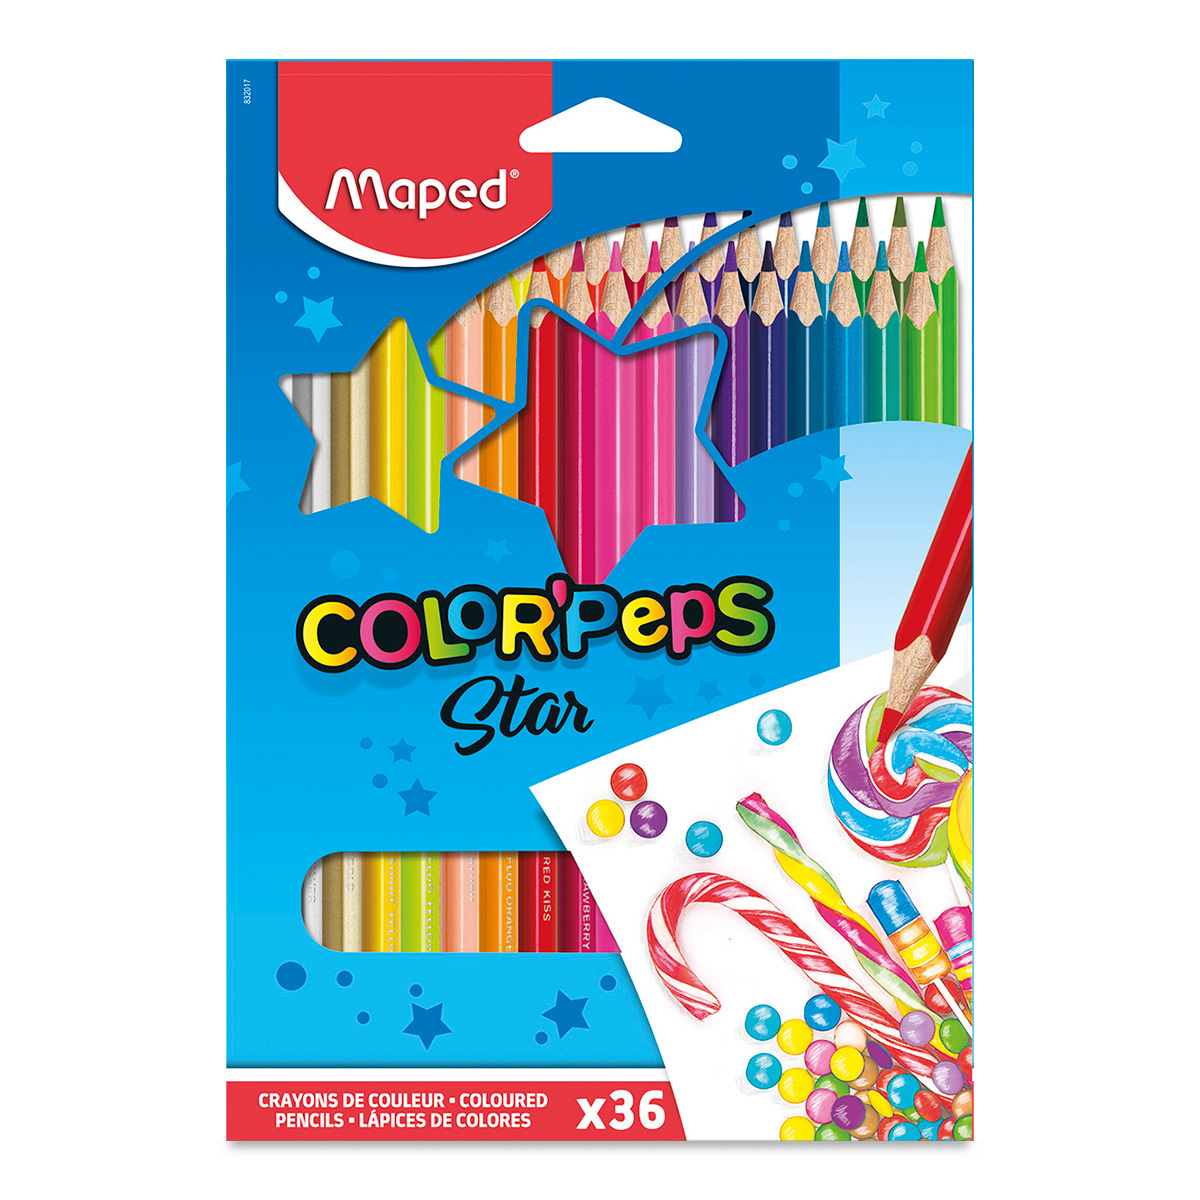 Lapices de color Maped con 36 piezas  Lá Caja con 36 lápices de color, triangular, mina suave y resistente                                                                                                                                                                                               piz colorpeps triangular                 - MAPED